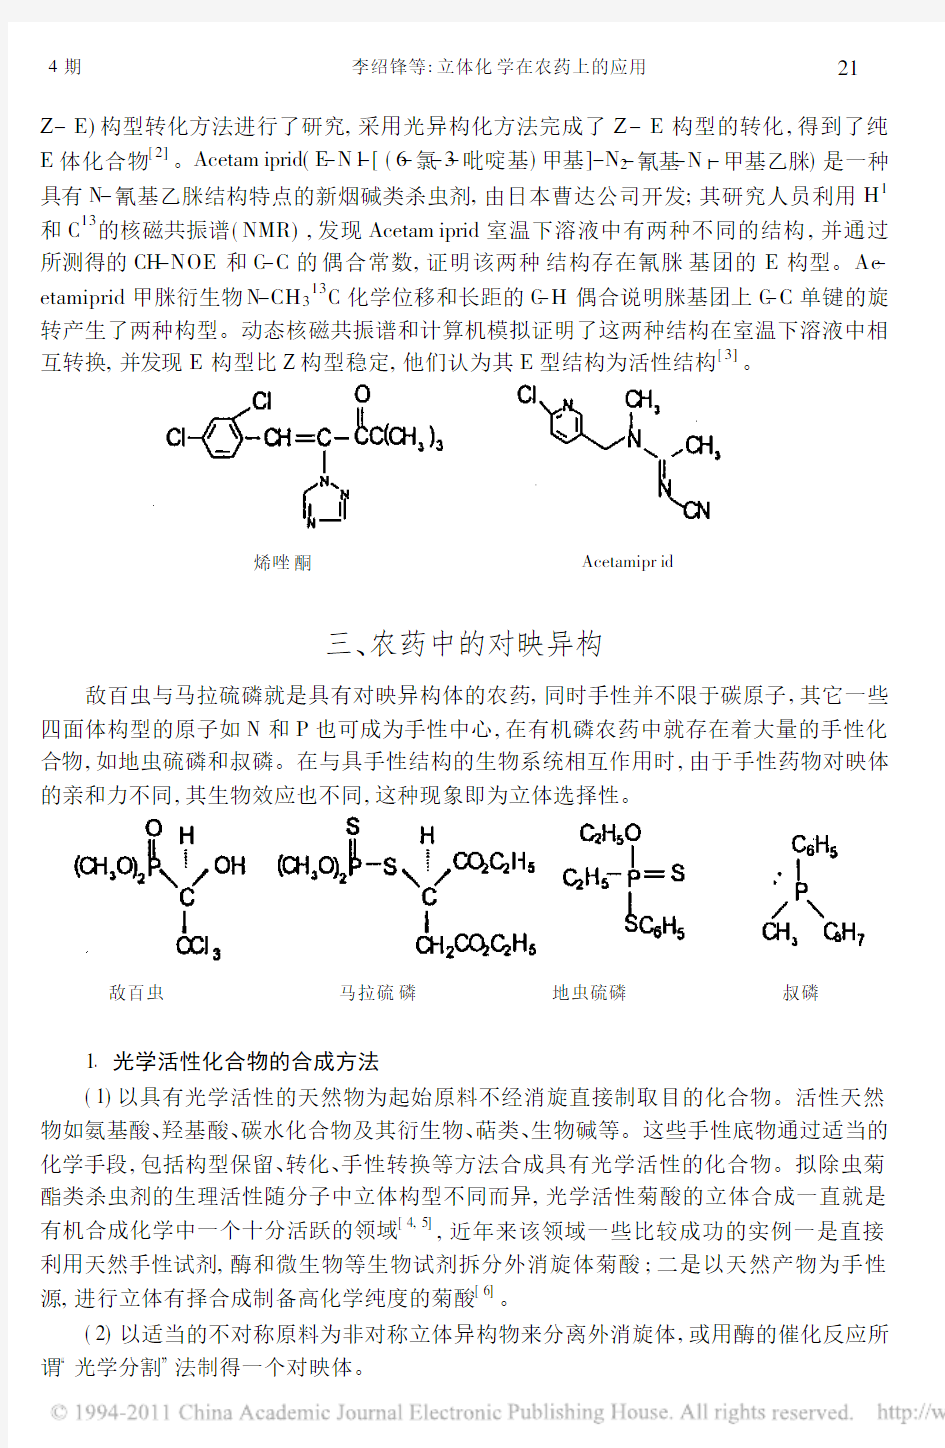 立体化学在农药上的应用_李绍锋